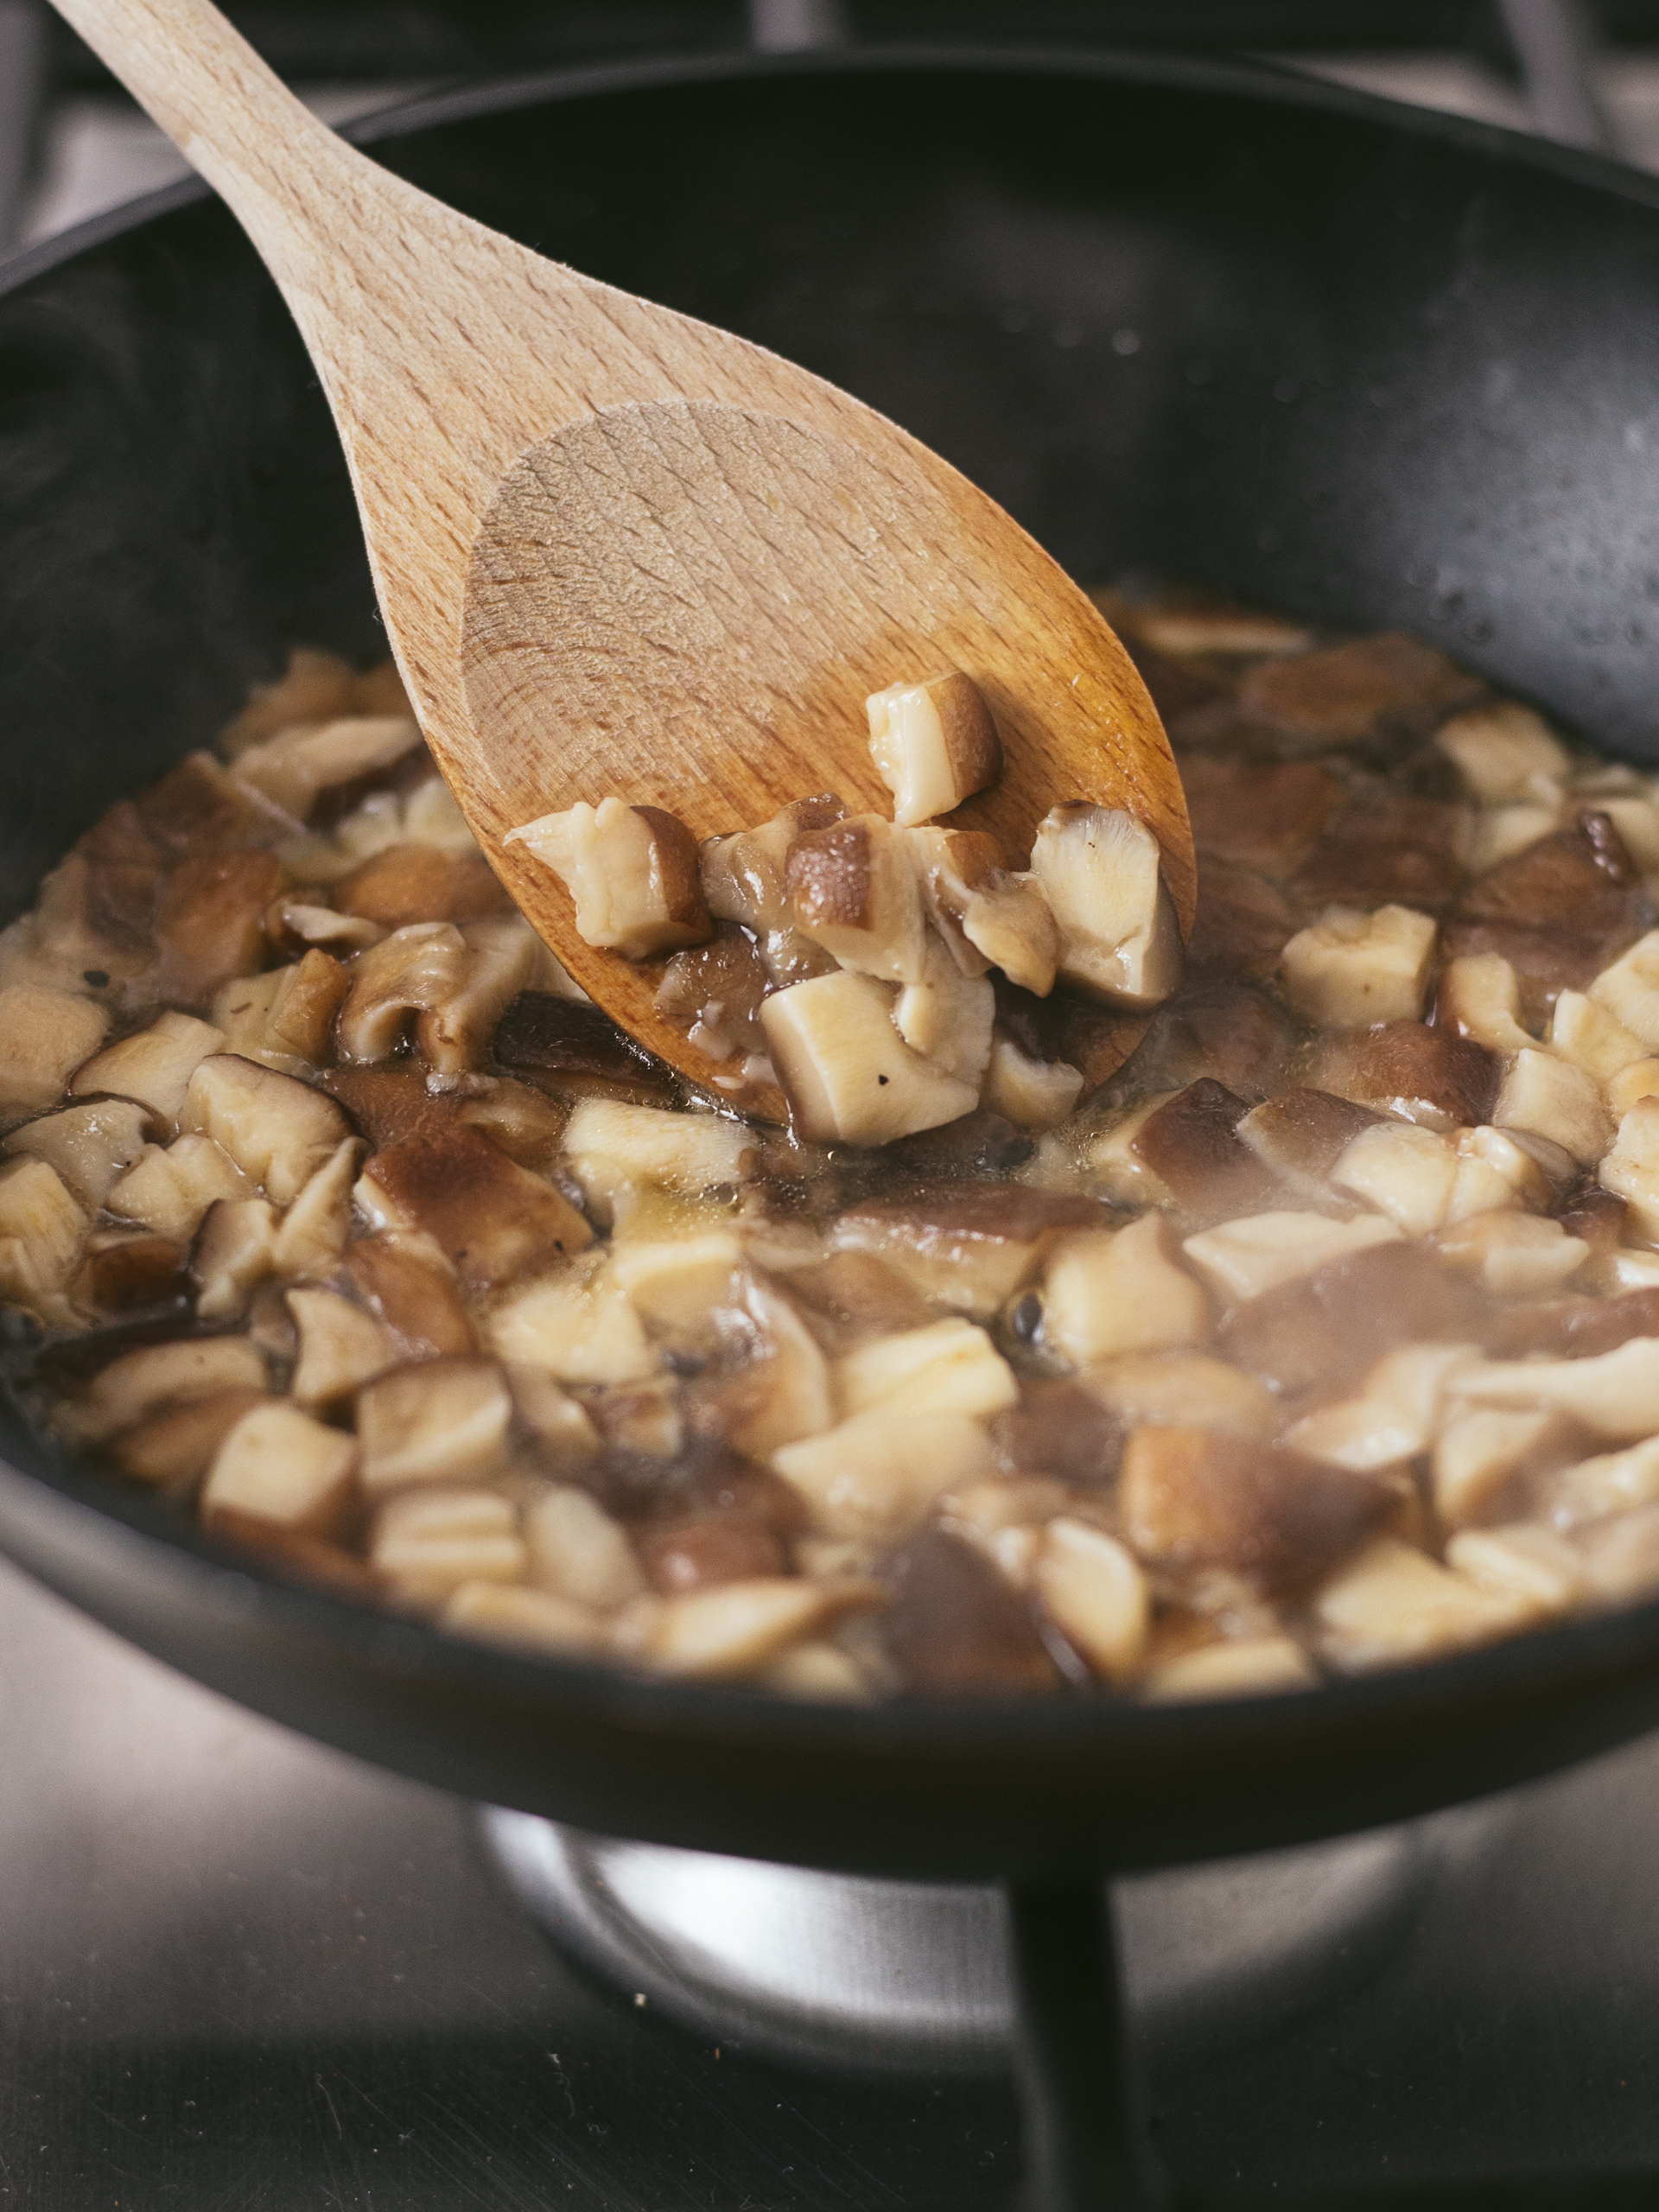 shiitake mushrooms cooking in a pan